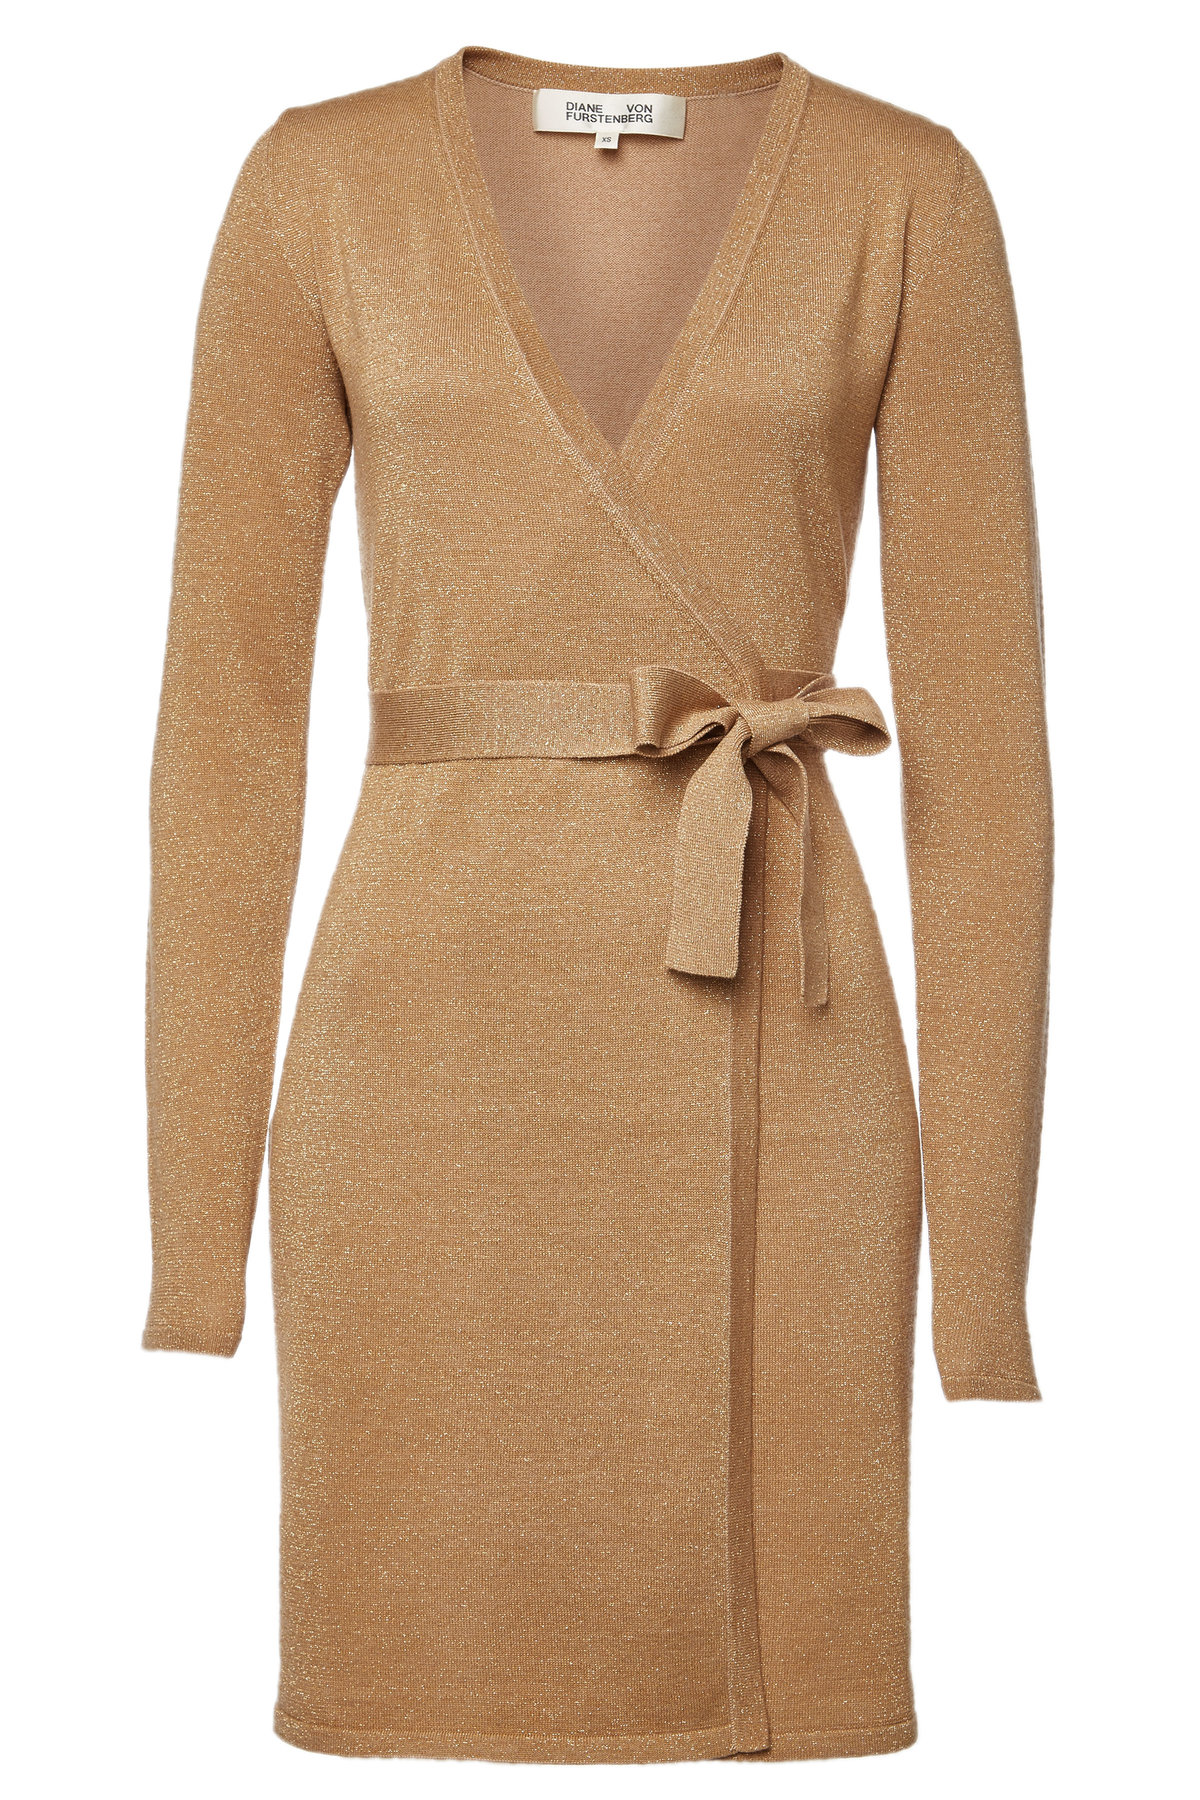 Shop Diane Von Furstenberg Wrap Dress ...